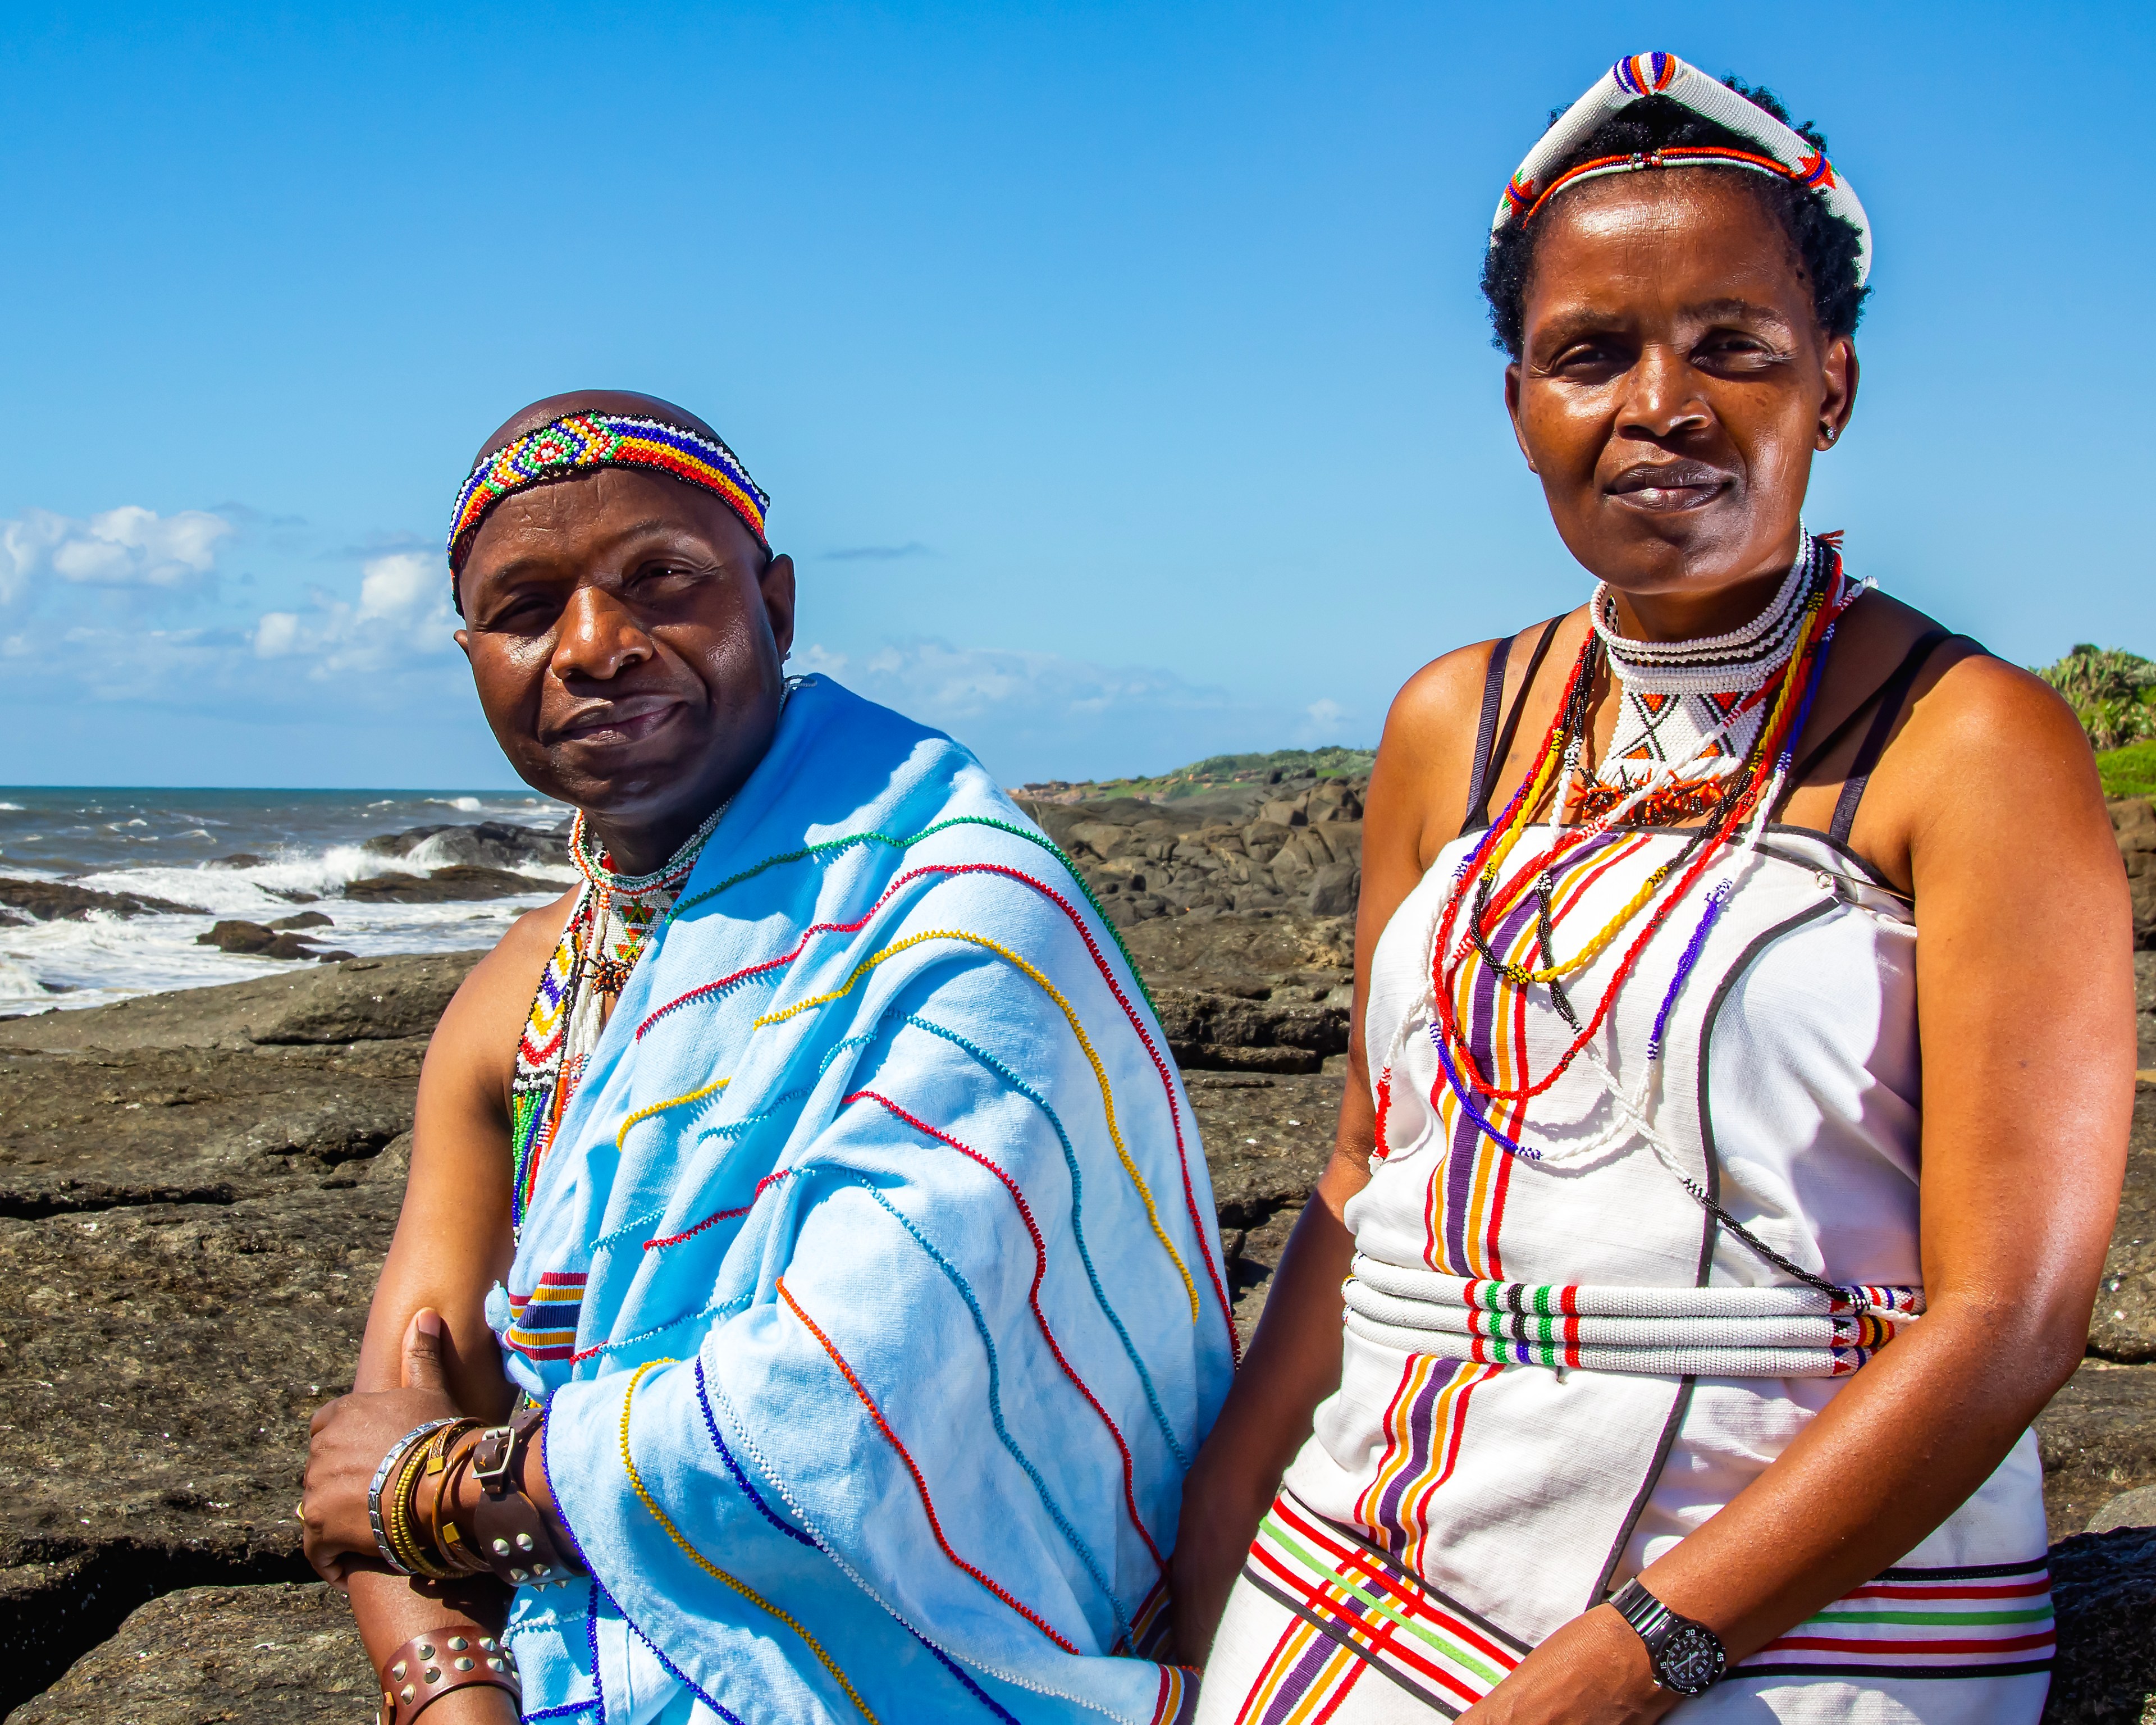 Nonhle Mbuthuma and Sinegugu Zukulu of South Africa